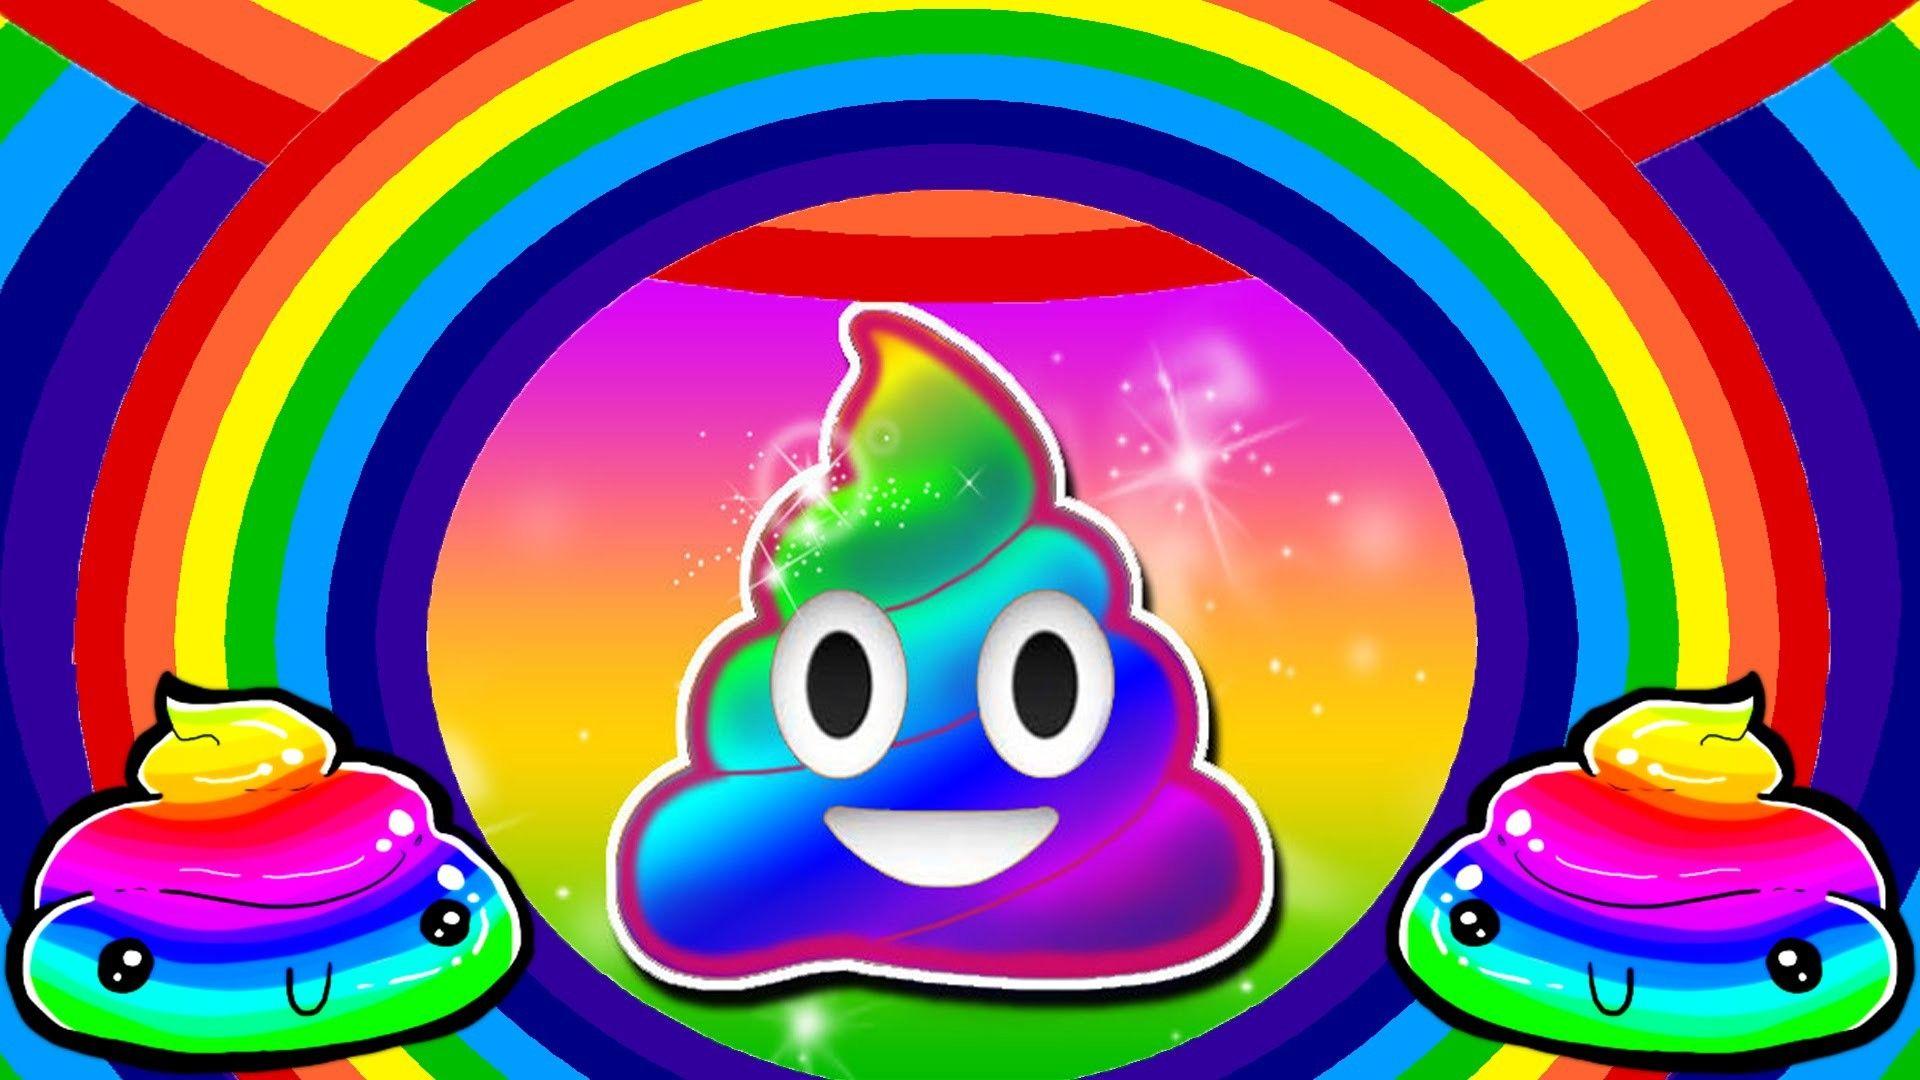 Poop Emoji Wallpapers Top Free Poop Emoji Backgrounds